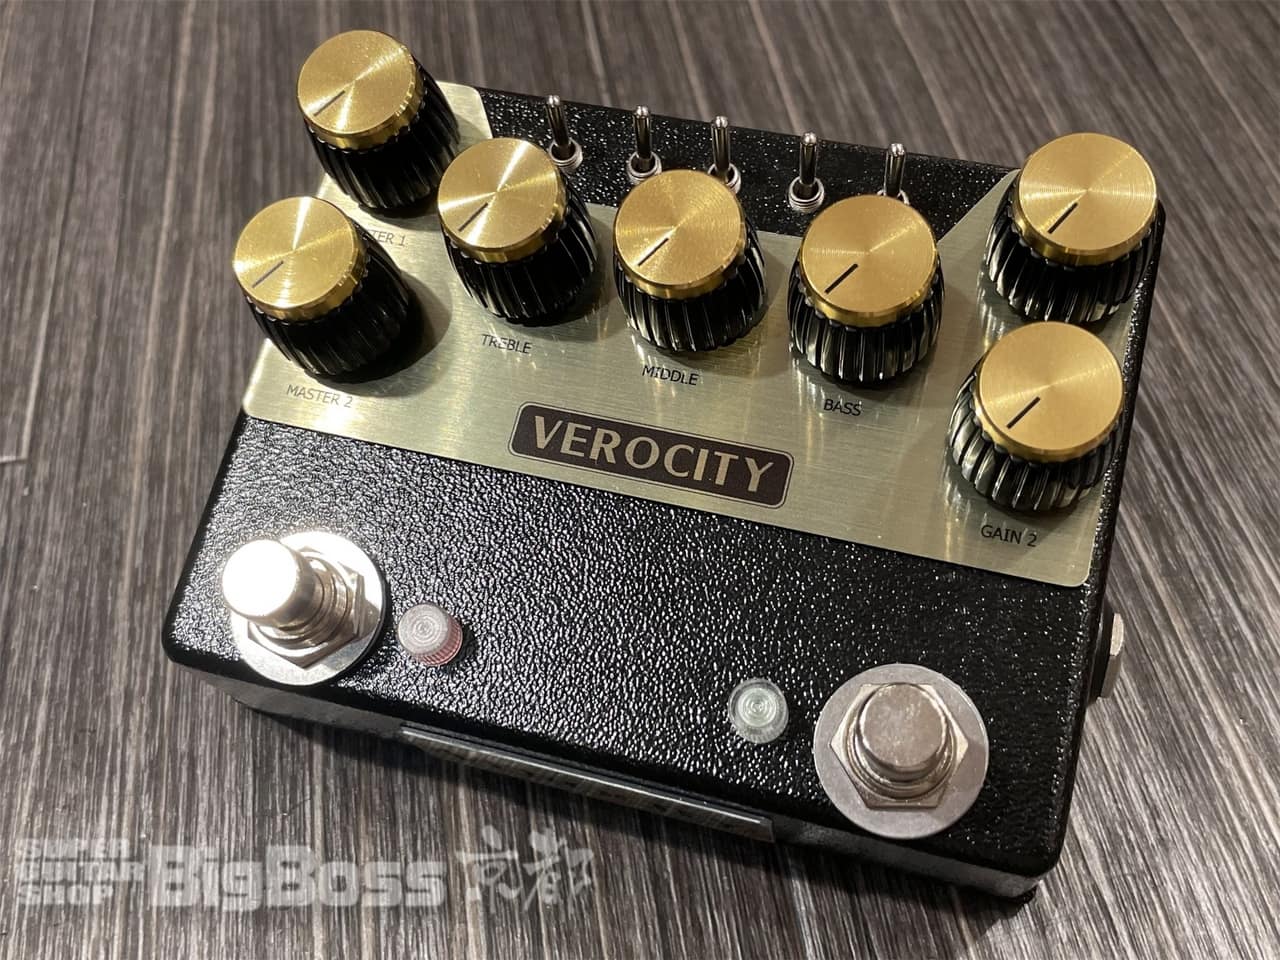 【即納可能】VeroCity Effects Pedals(ヴェロシティ) FRD-5  京都店